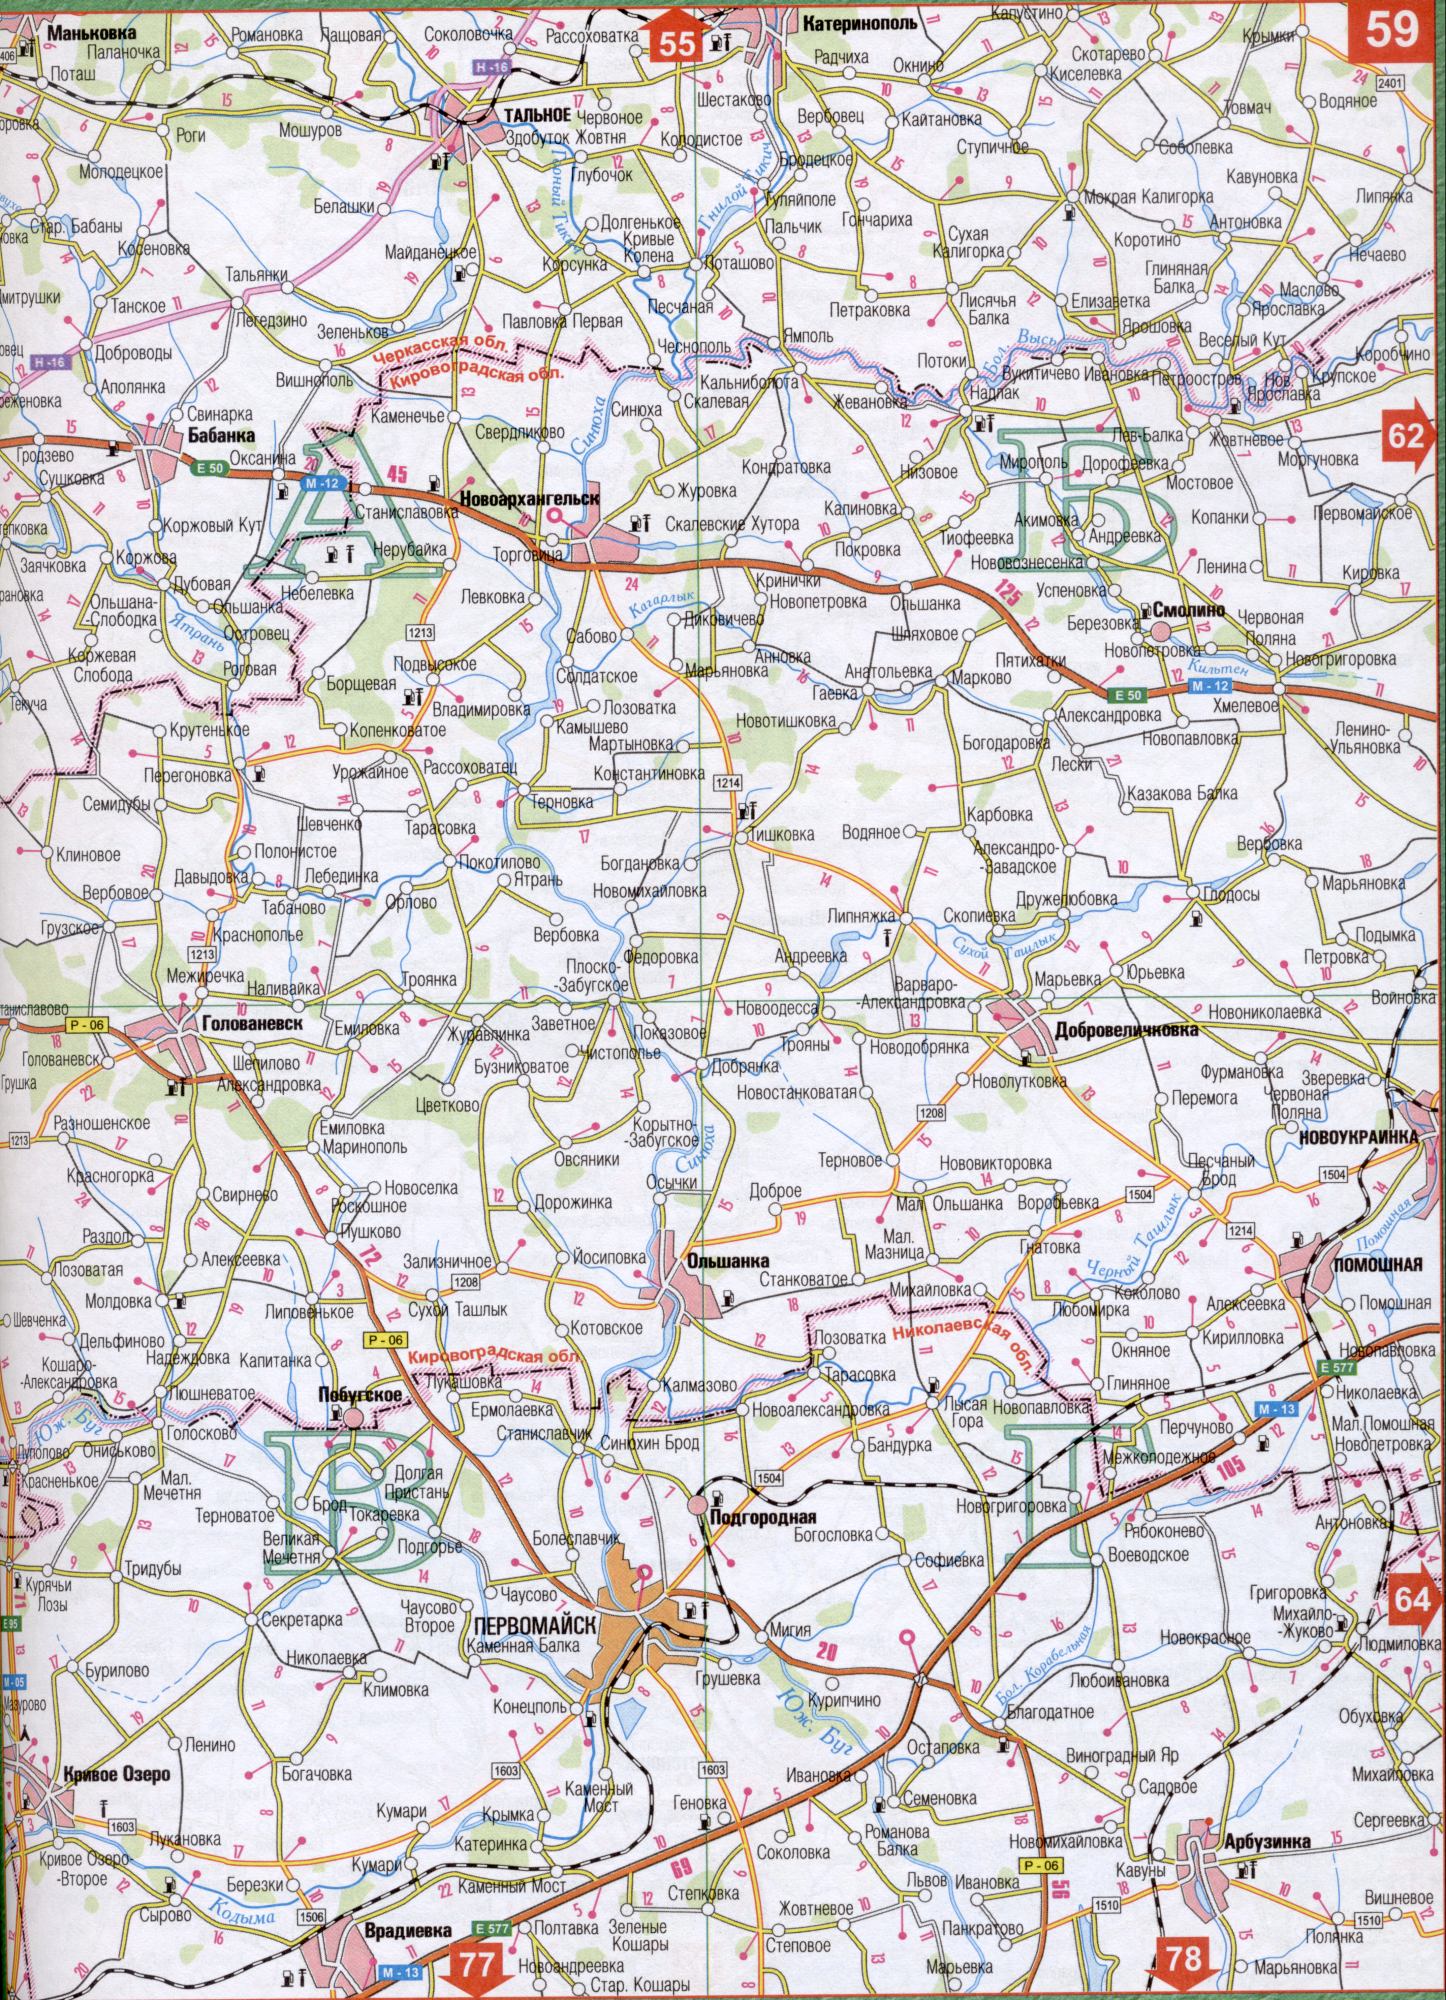 Карта Черкаської області Україна (обласний центр м.Черкаси). Завантажити безкоштовно докладну карту автомобільних доріг, A1 - Кагарлик, Ятрань, кільти